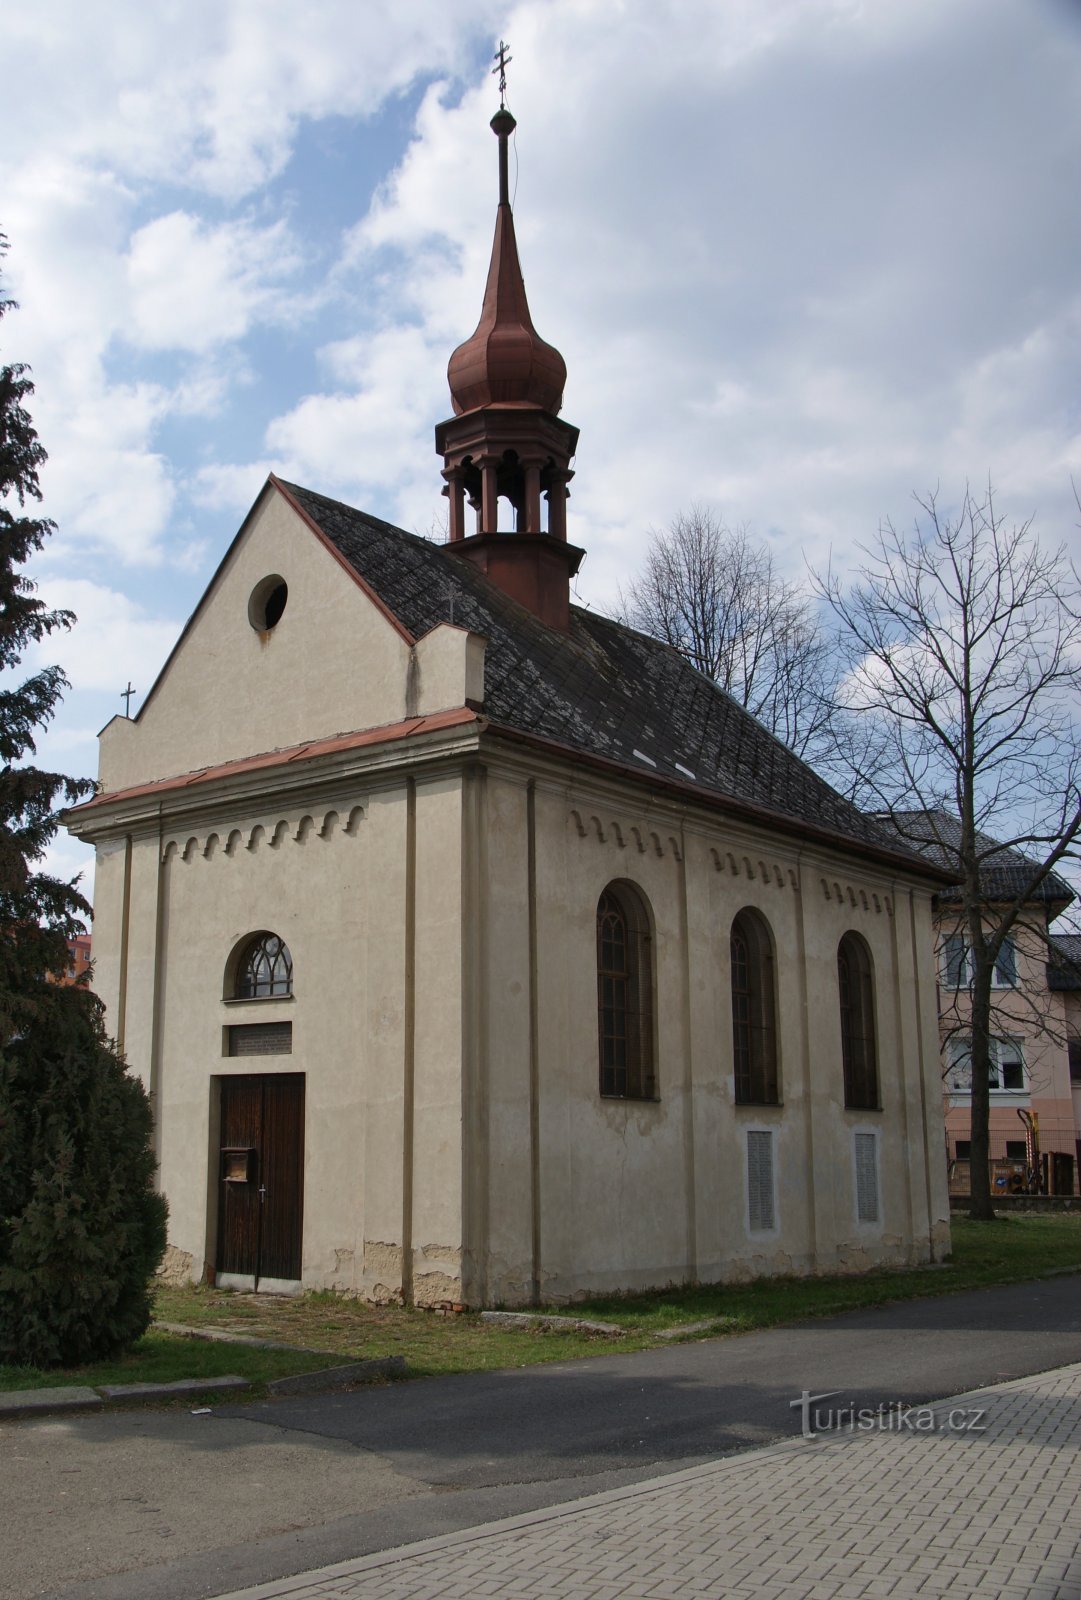 Dolní Temenice (Šumperk) – 圣家族教堂